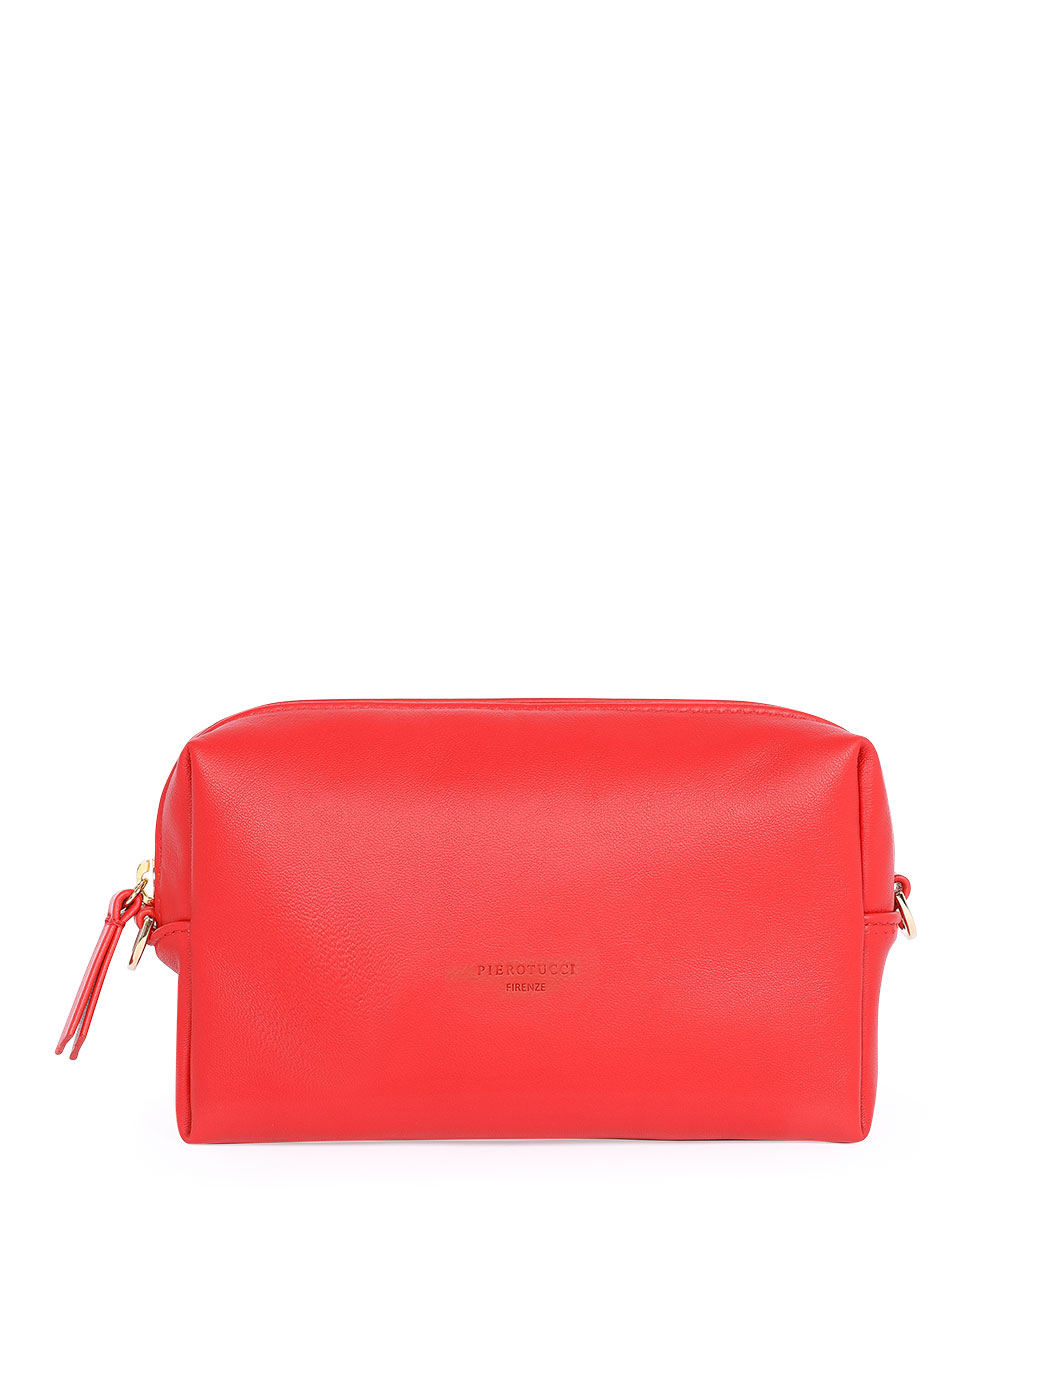 Прямоугольная сумочка с регулируемым ремнем красного цвета